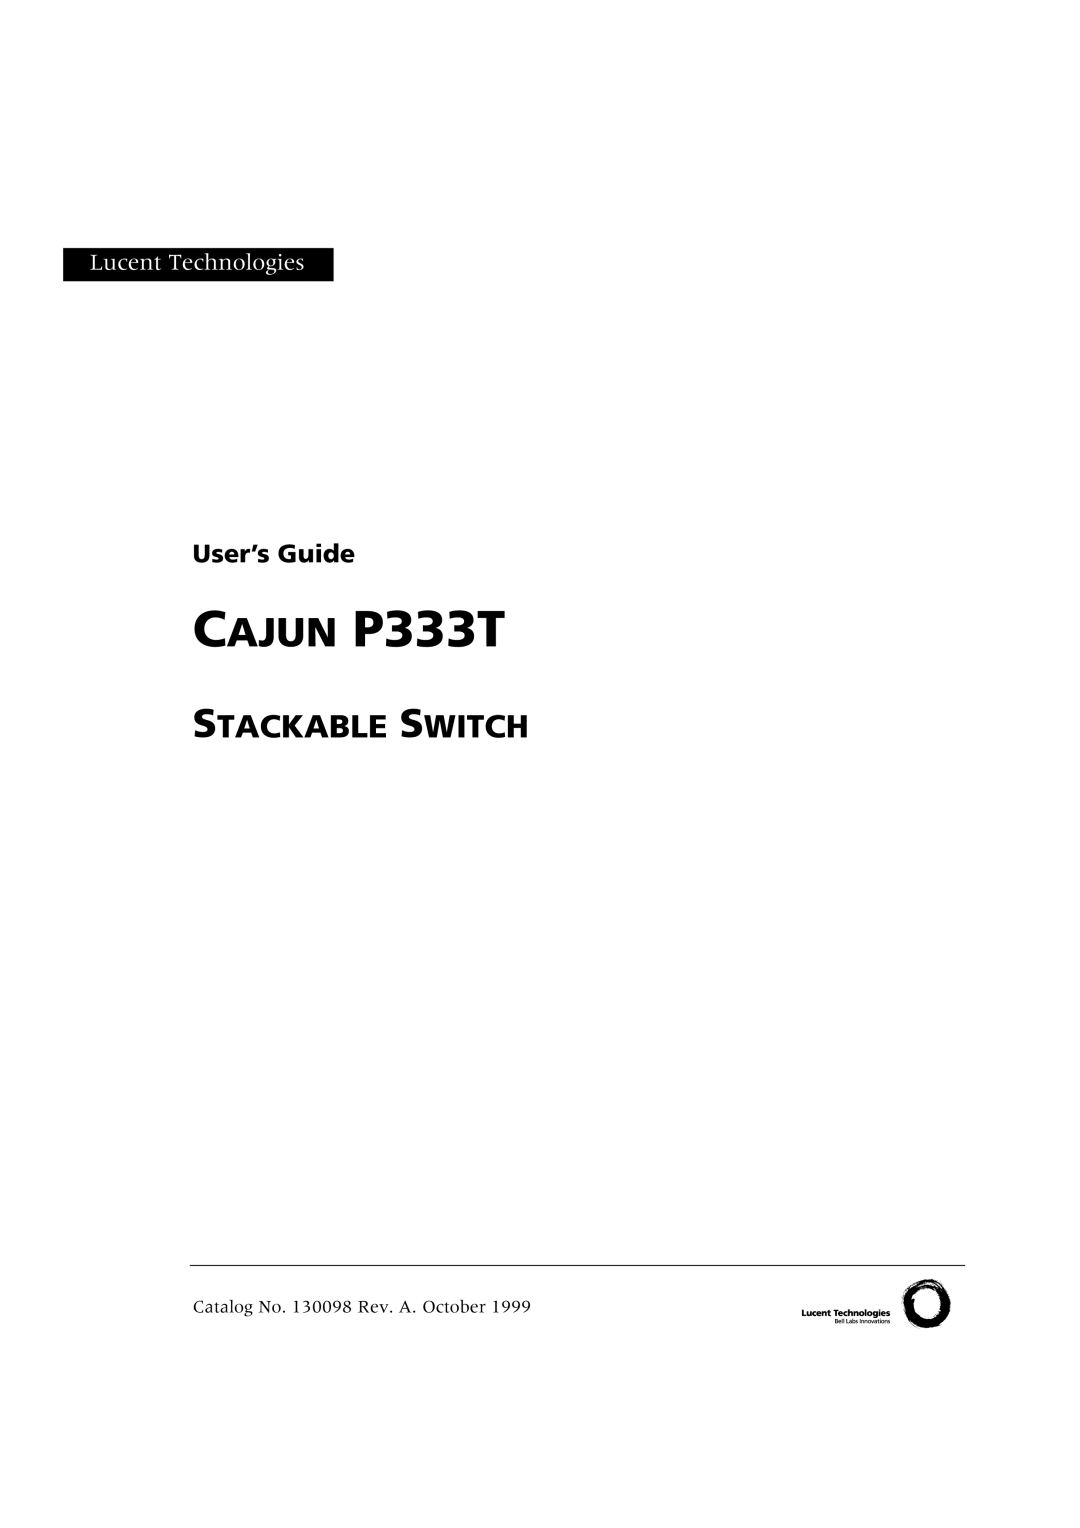 Lucent Technologies manual Cajun P333T 